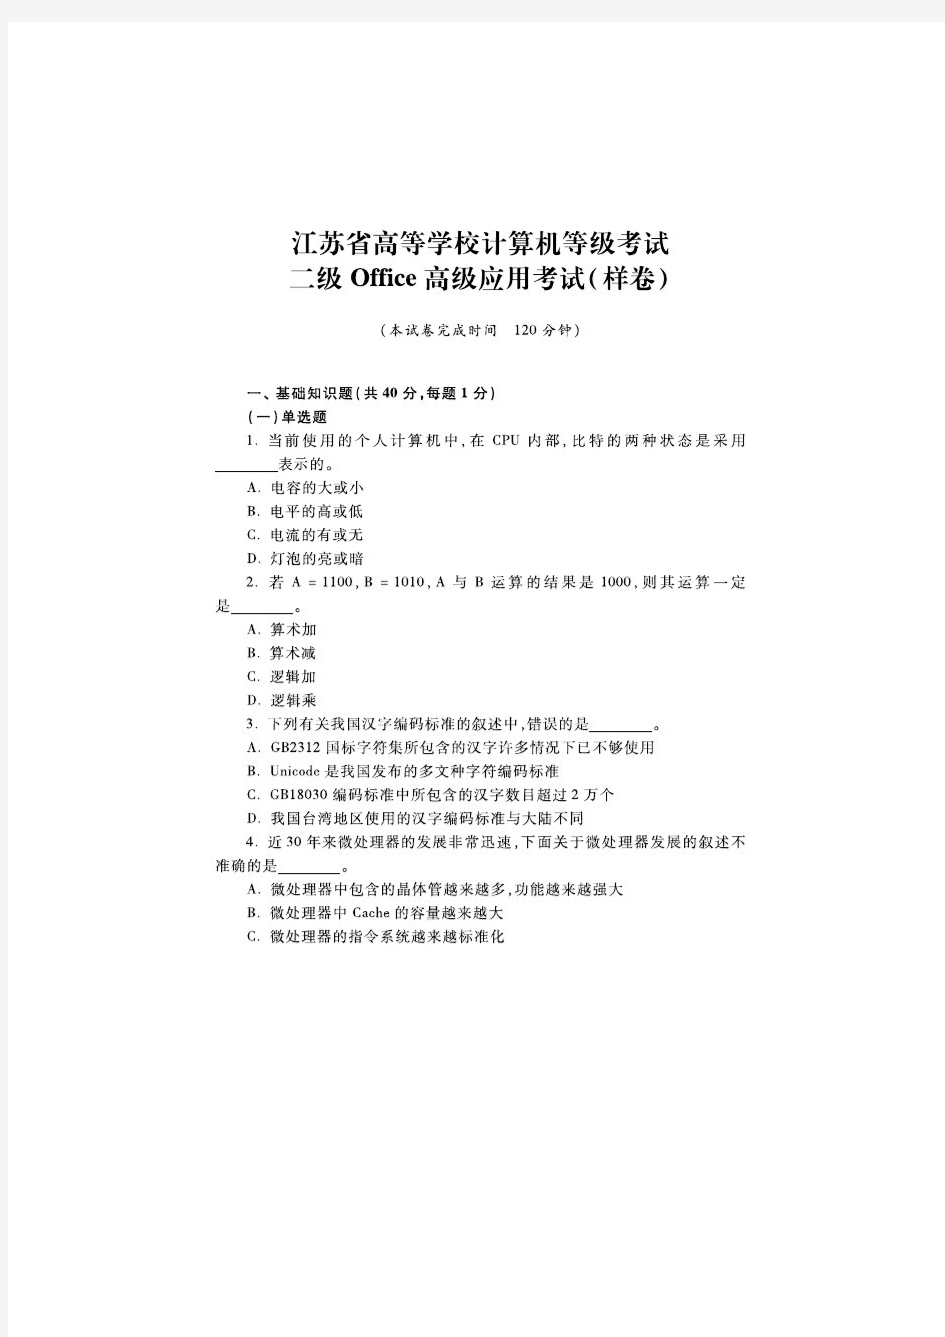 江苏省计算机二级考试(MS OFFICE)